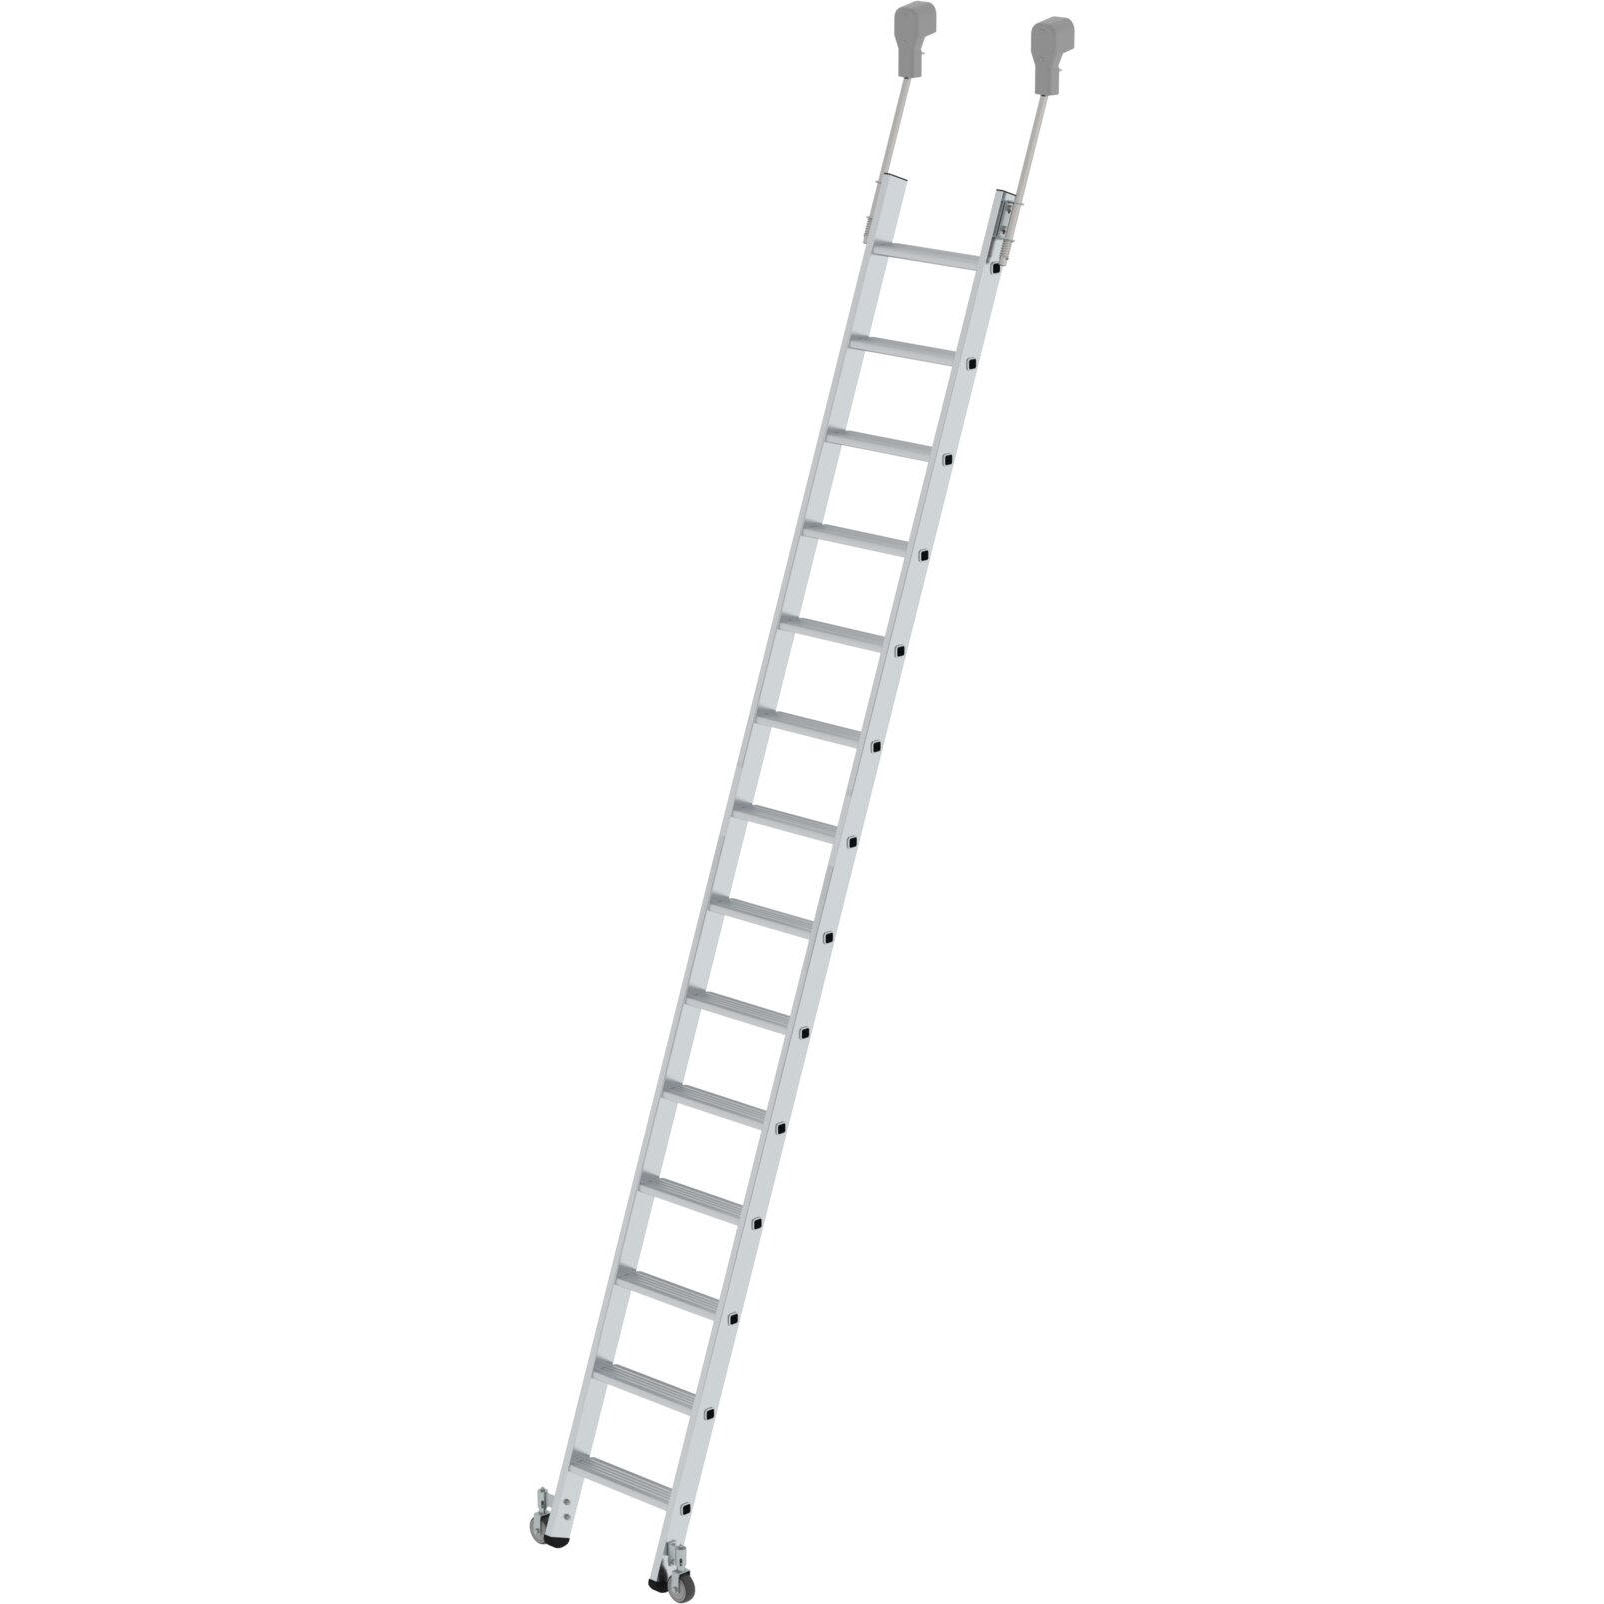 Мобильная стеллажная лестница из алюминия 14 ступеней Munk 041414